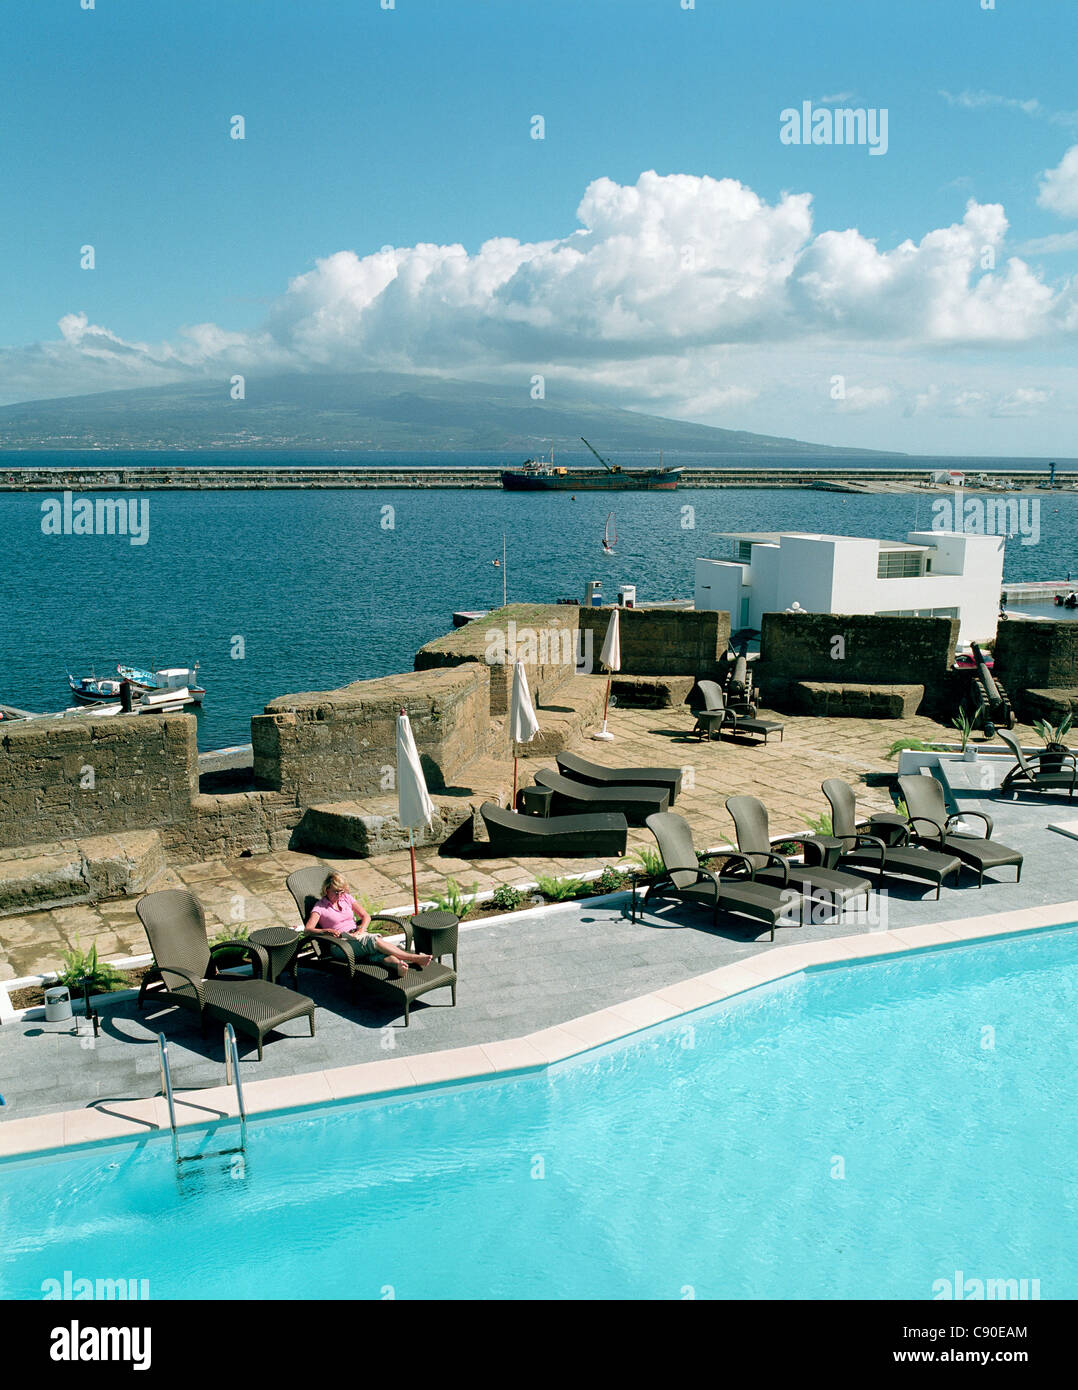 La piscine extérieure de l'hôtel Pousada de Portugal Castello de Santa Cruz surplombant le port de Horta, île de Faial Açores Portugal Banque D'Images